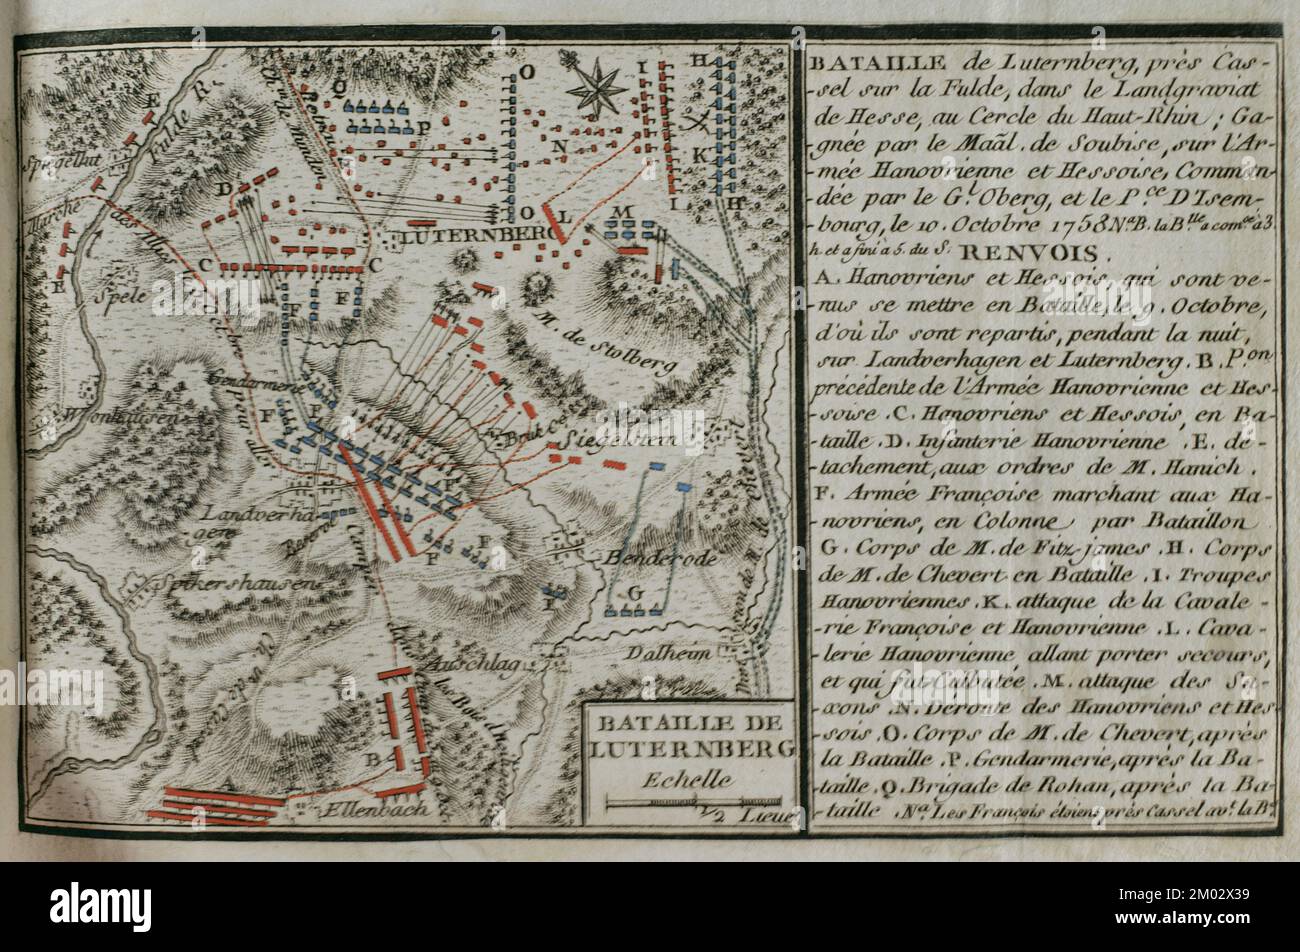 Guerra dei sette anni (1756-1763). Mappa della Battaglia di Lutterberg (10 ottobre 1758). Le truppe francesi, guidate dal principe Soubise, sconfissero un contingente di soldati anoveriani e mercenari essiani, comandati dal generale Christoph Ludwig von Oberg. Pubblicato nel 1765 dal cartografo Jean de Beaurain (1696-1771) come illustrazione della sua Grande carta della Germania, con gli eventi che si sono verificati durante la Guerra dei sette anni. Esercito alleato in rosso e esercito francese in blu. Incisione e incisione. Edizione francese, 1765. Biblioteca storica militare di Barcellona (Biblioteca Histórico Militar de Barcelona). Cataloni Foto Stock